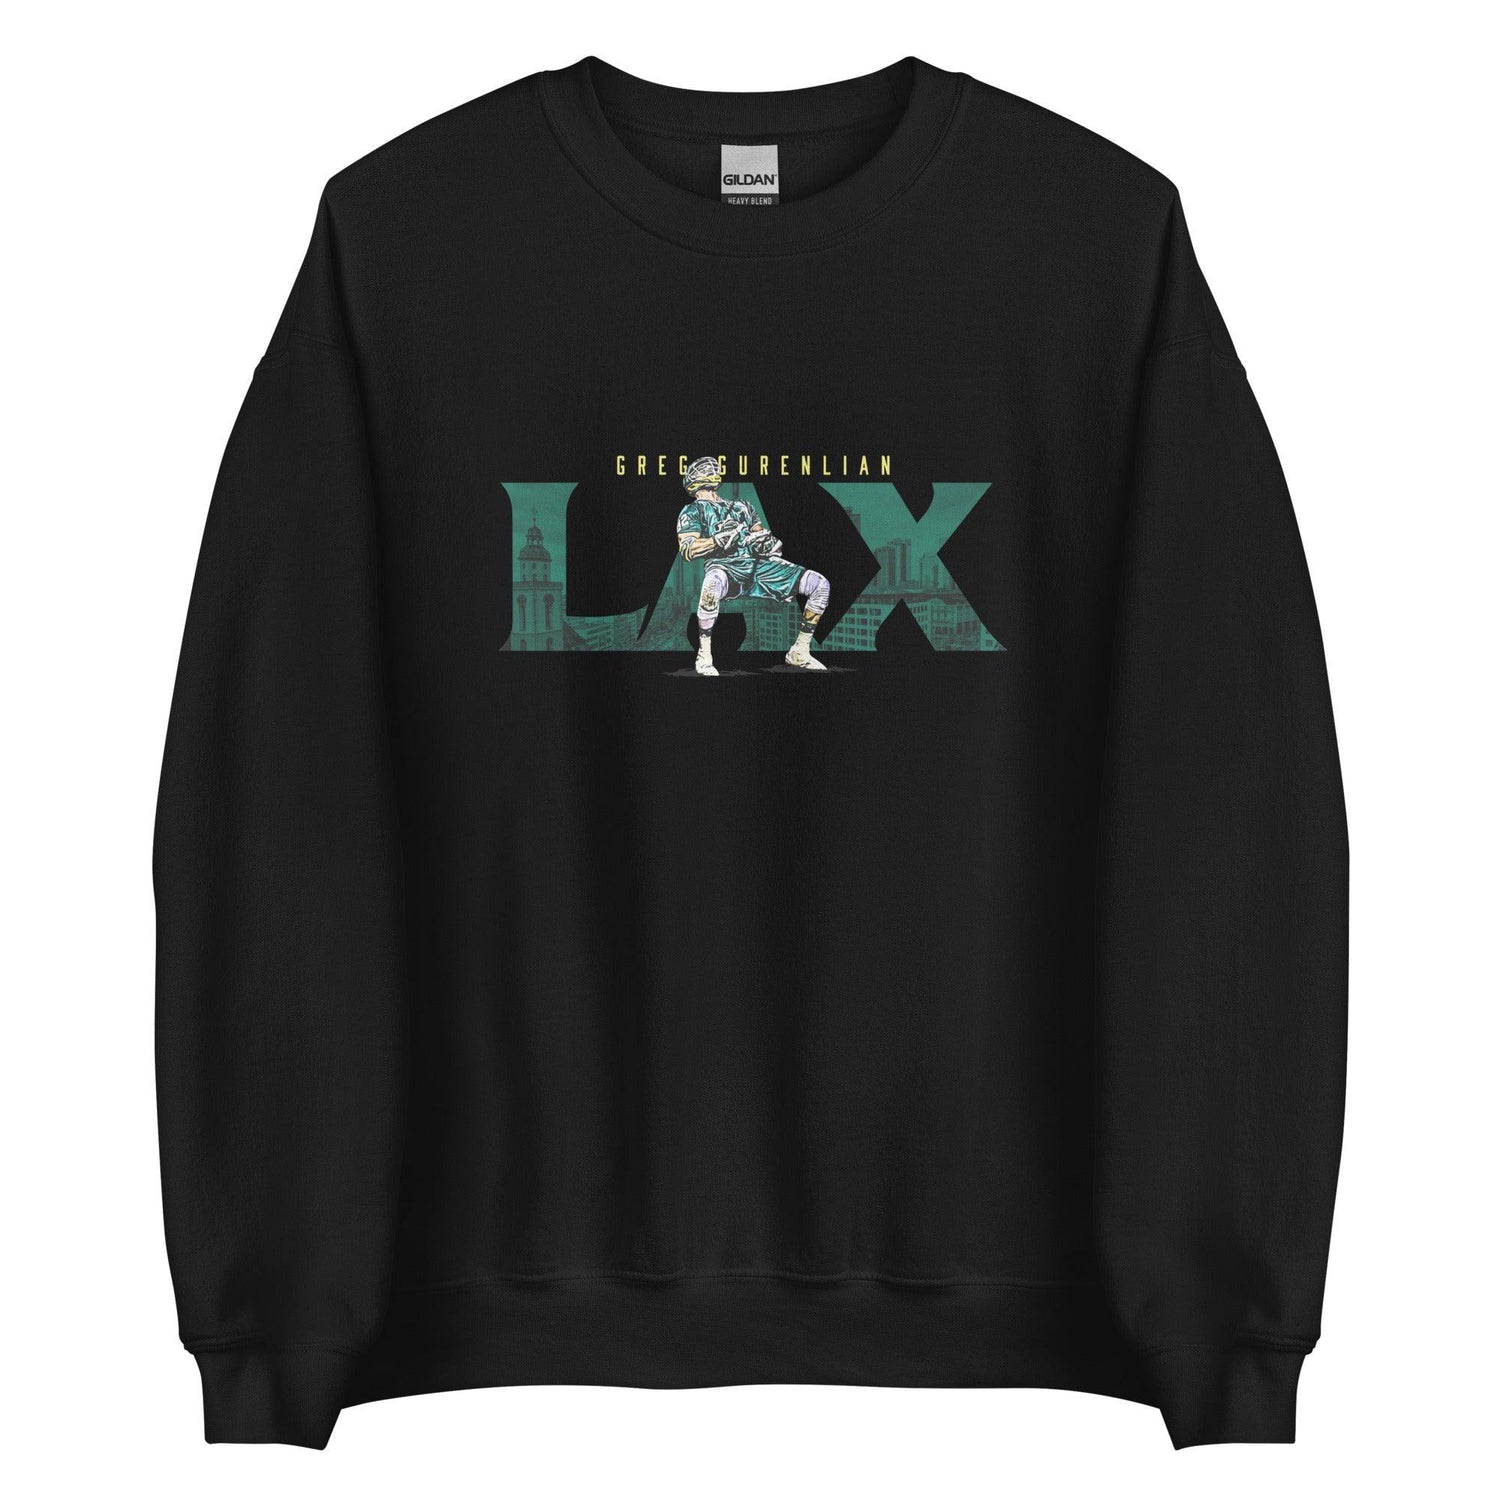 Greg Gurenlian "LAX" Sweatshirt - Fan Arch